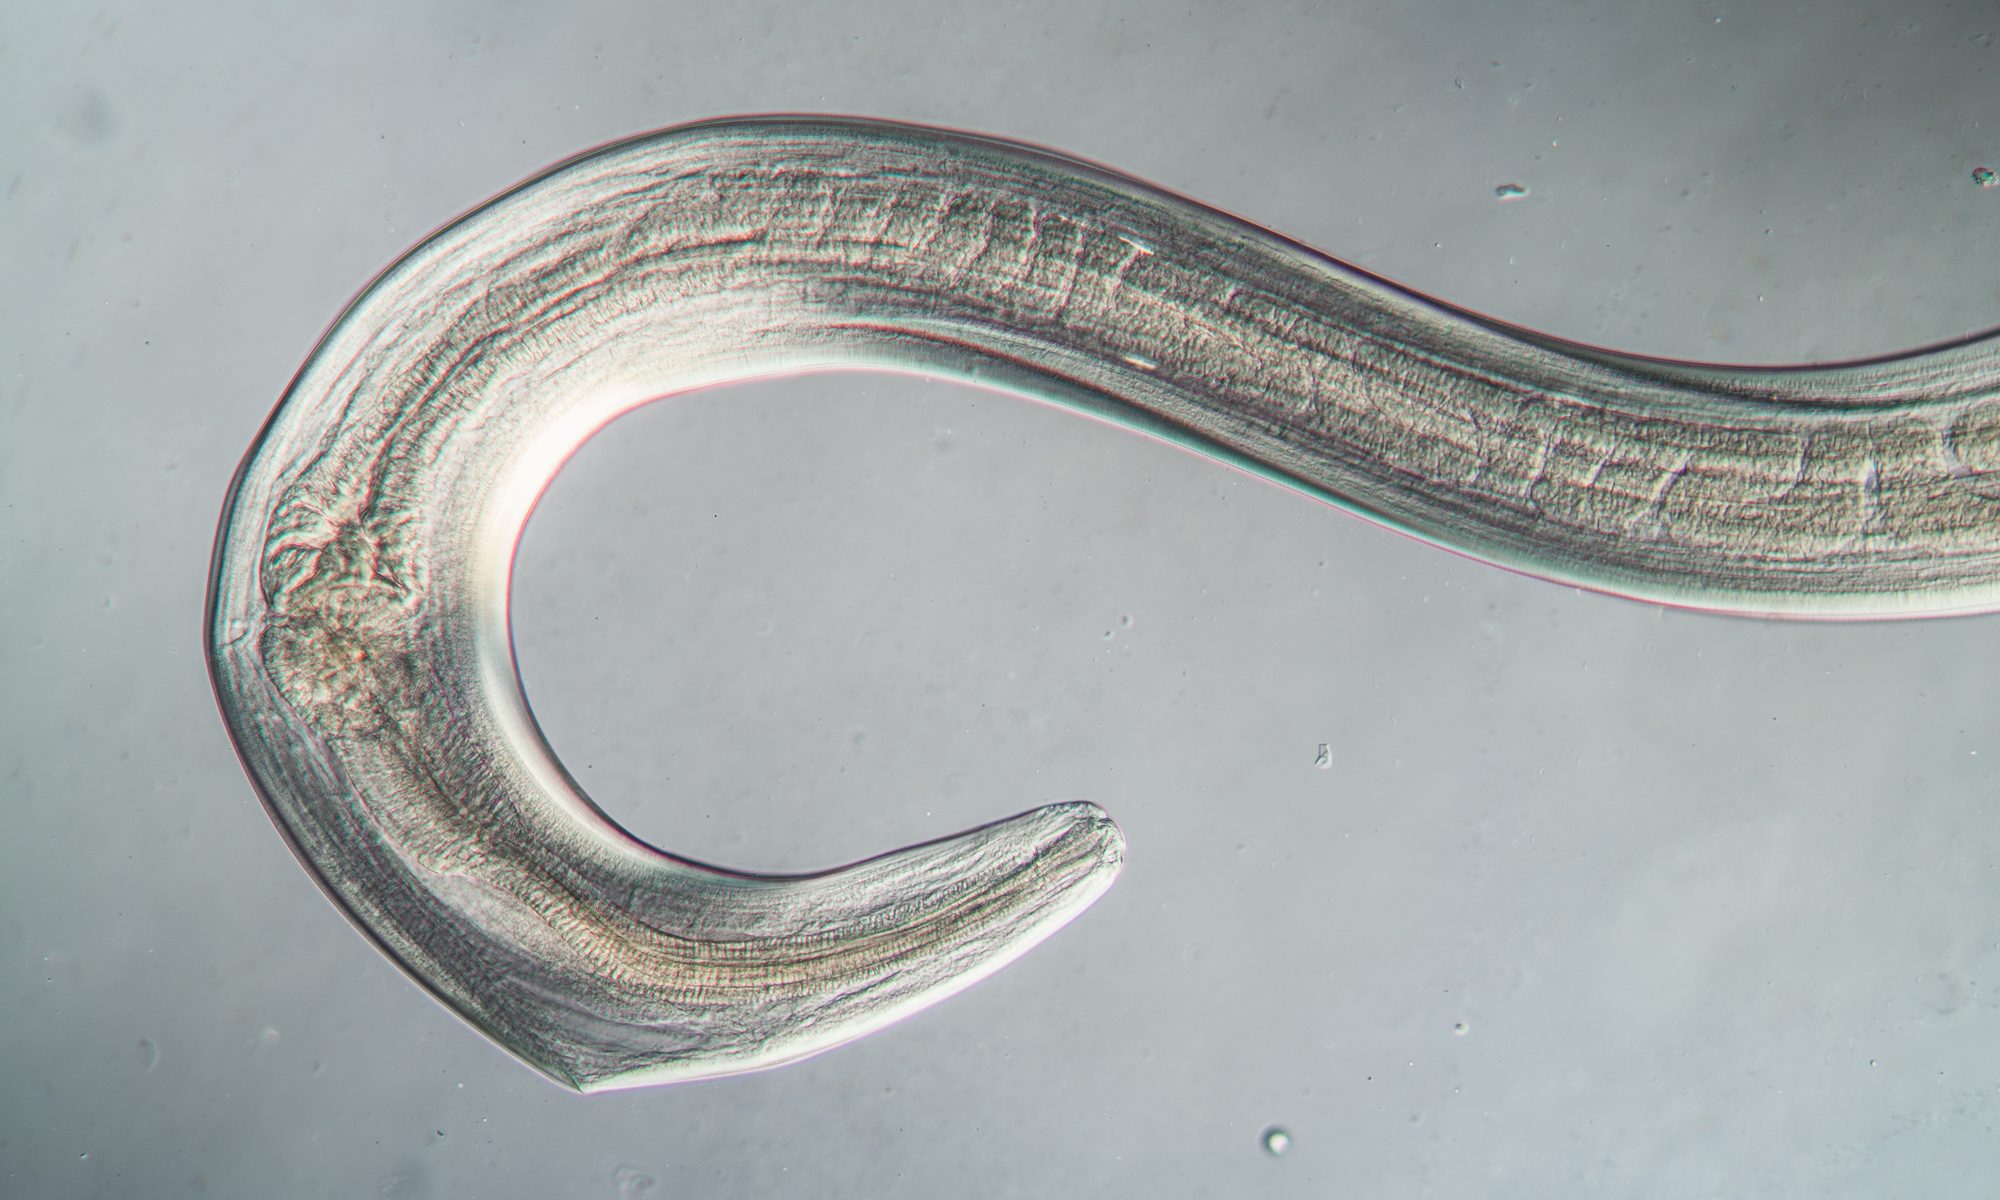 microscopic image of nematode